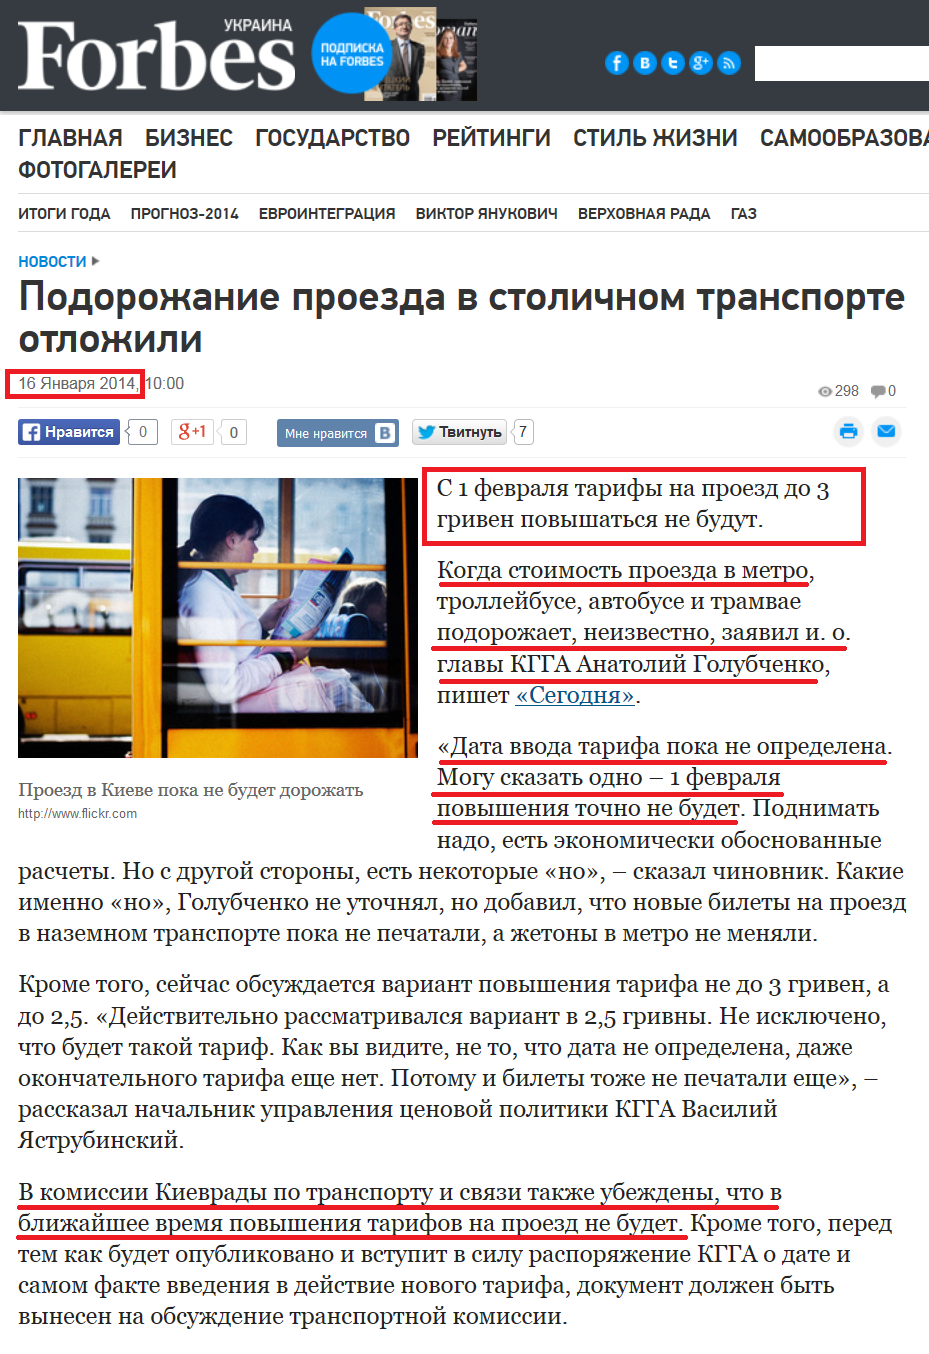 http://forbes.ua/news/1363454-podorozhanie-proezda-v-stolichnom-transporte-otlozhili